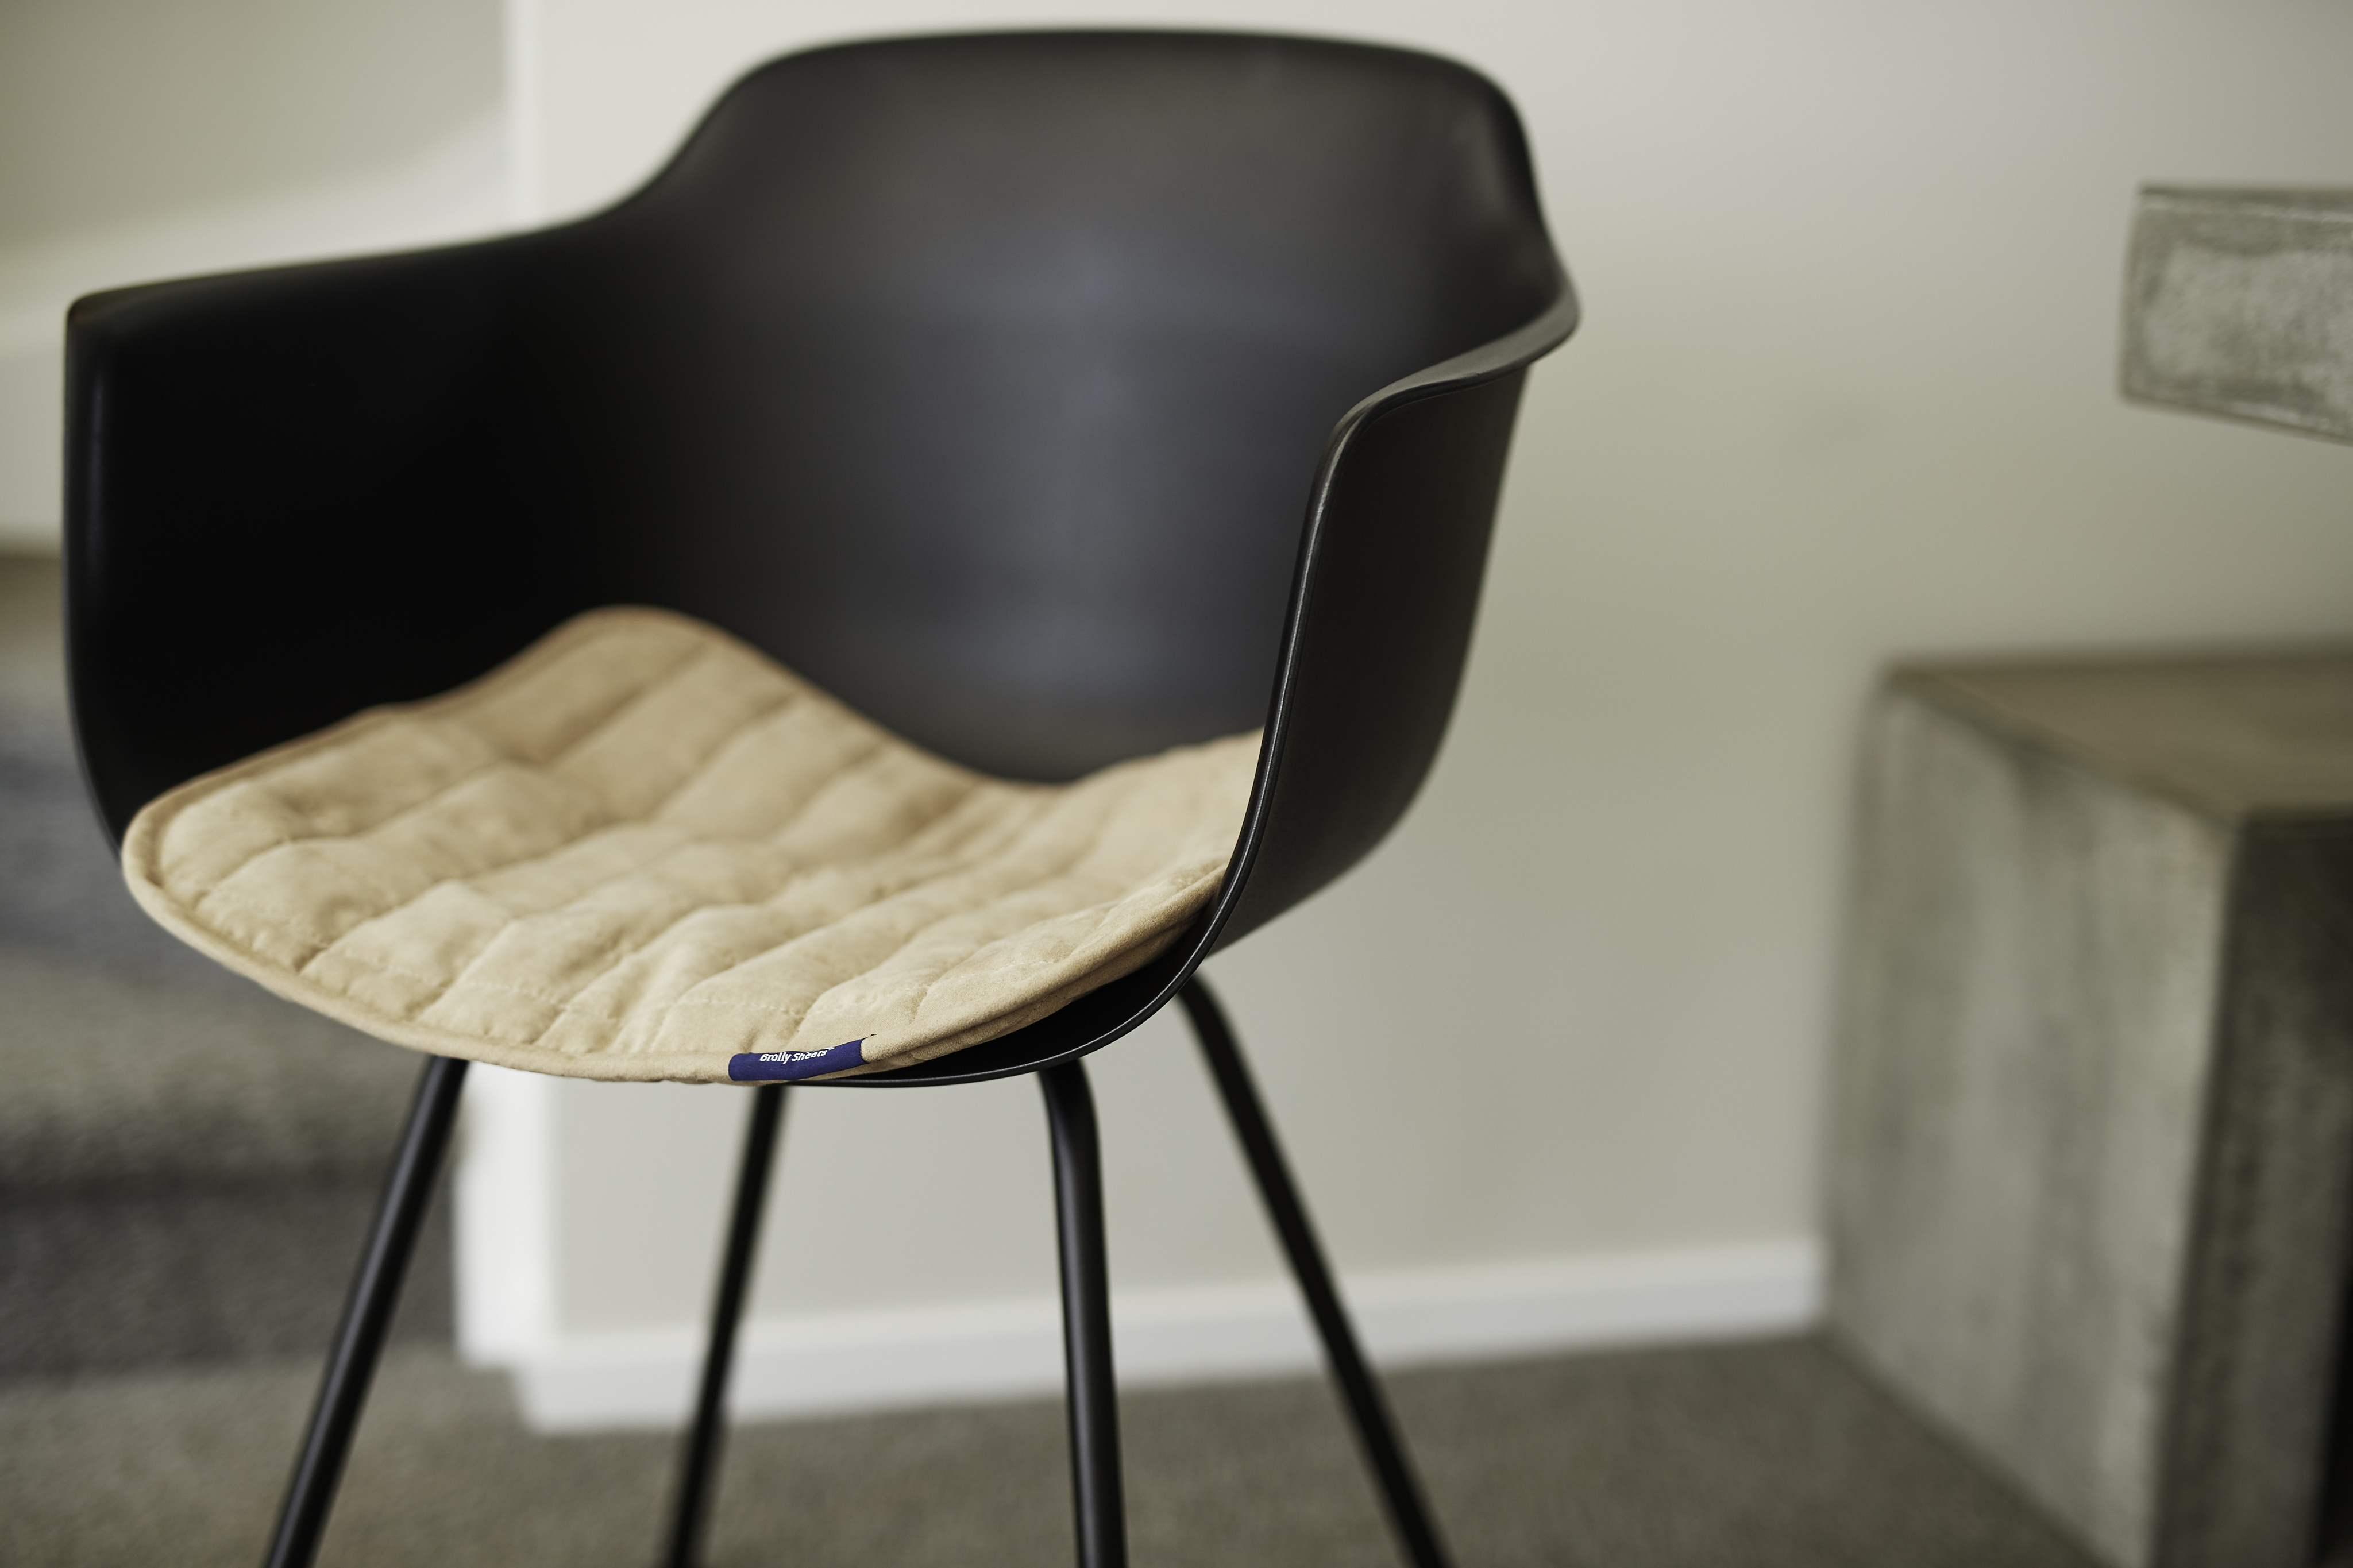 Brolly Quilted Waterproof Chair Pad Medium 60cm x 55cm Beige image 1